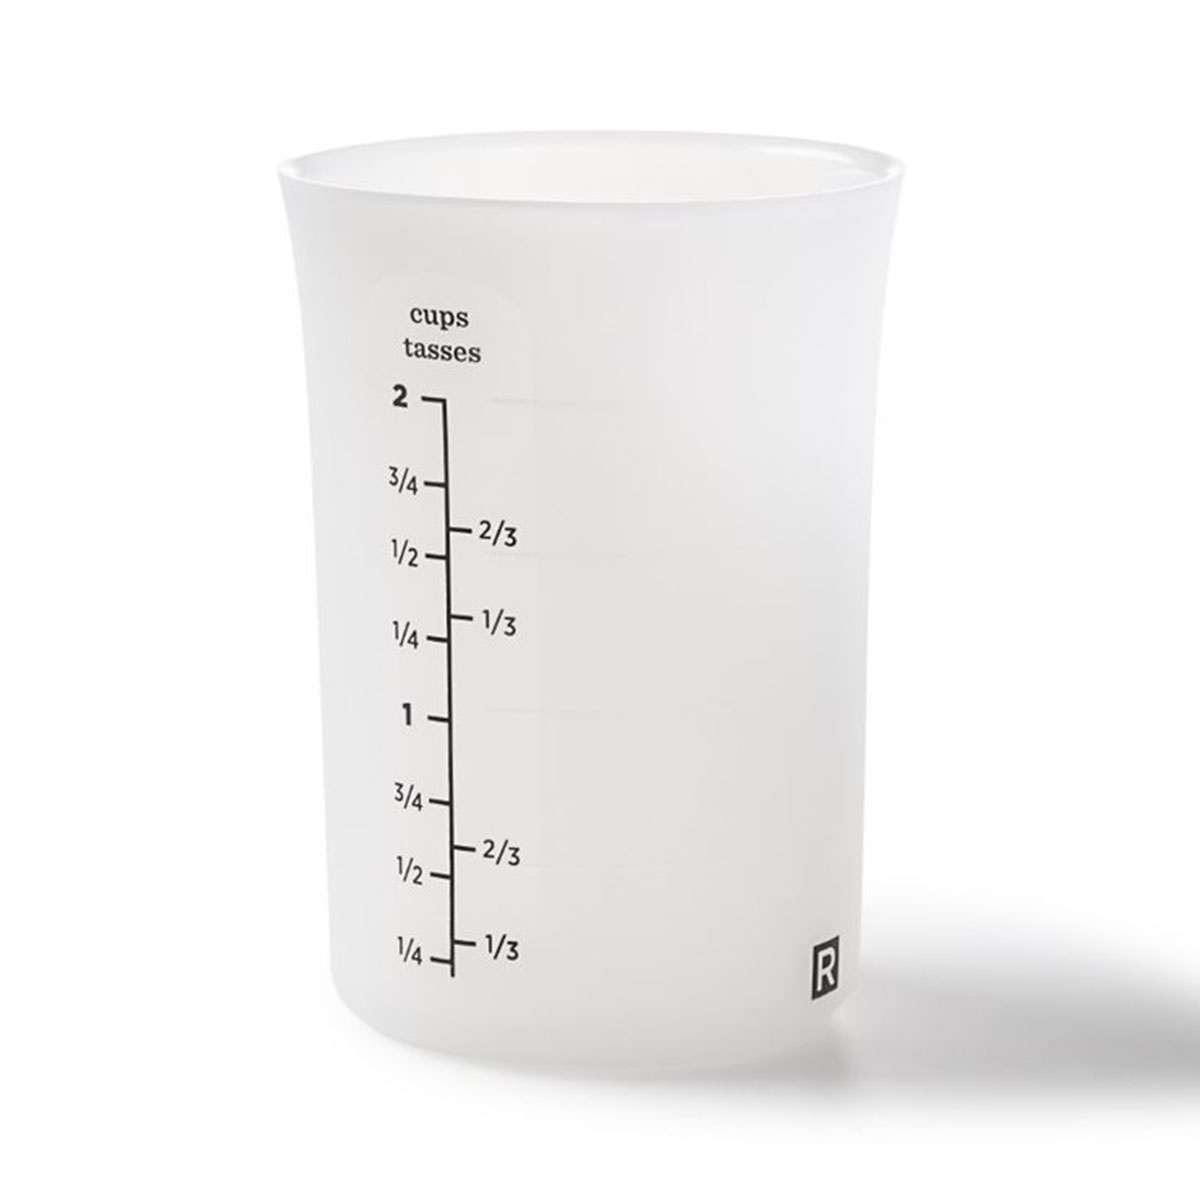 RICARDO 500 ml Silicone Measuring Cup - Boutique RICARDO